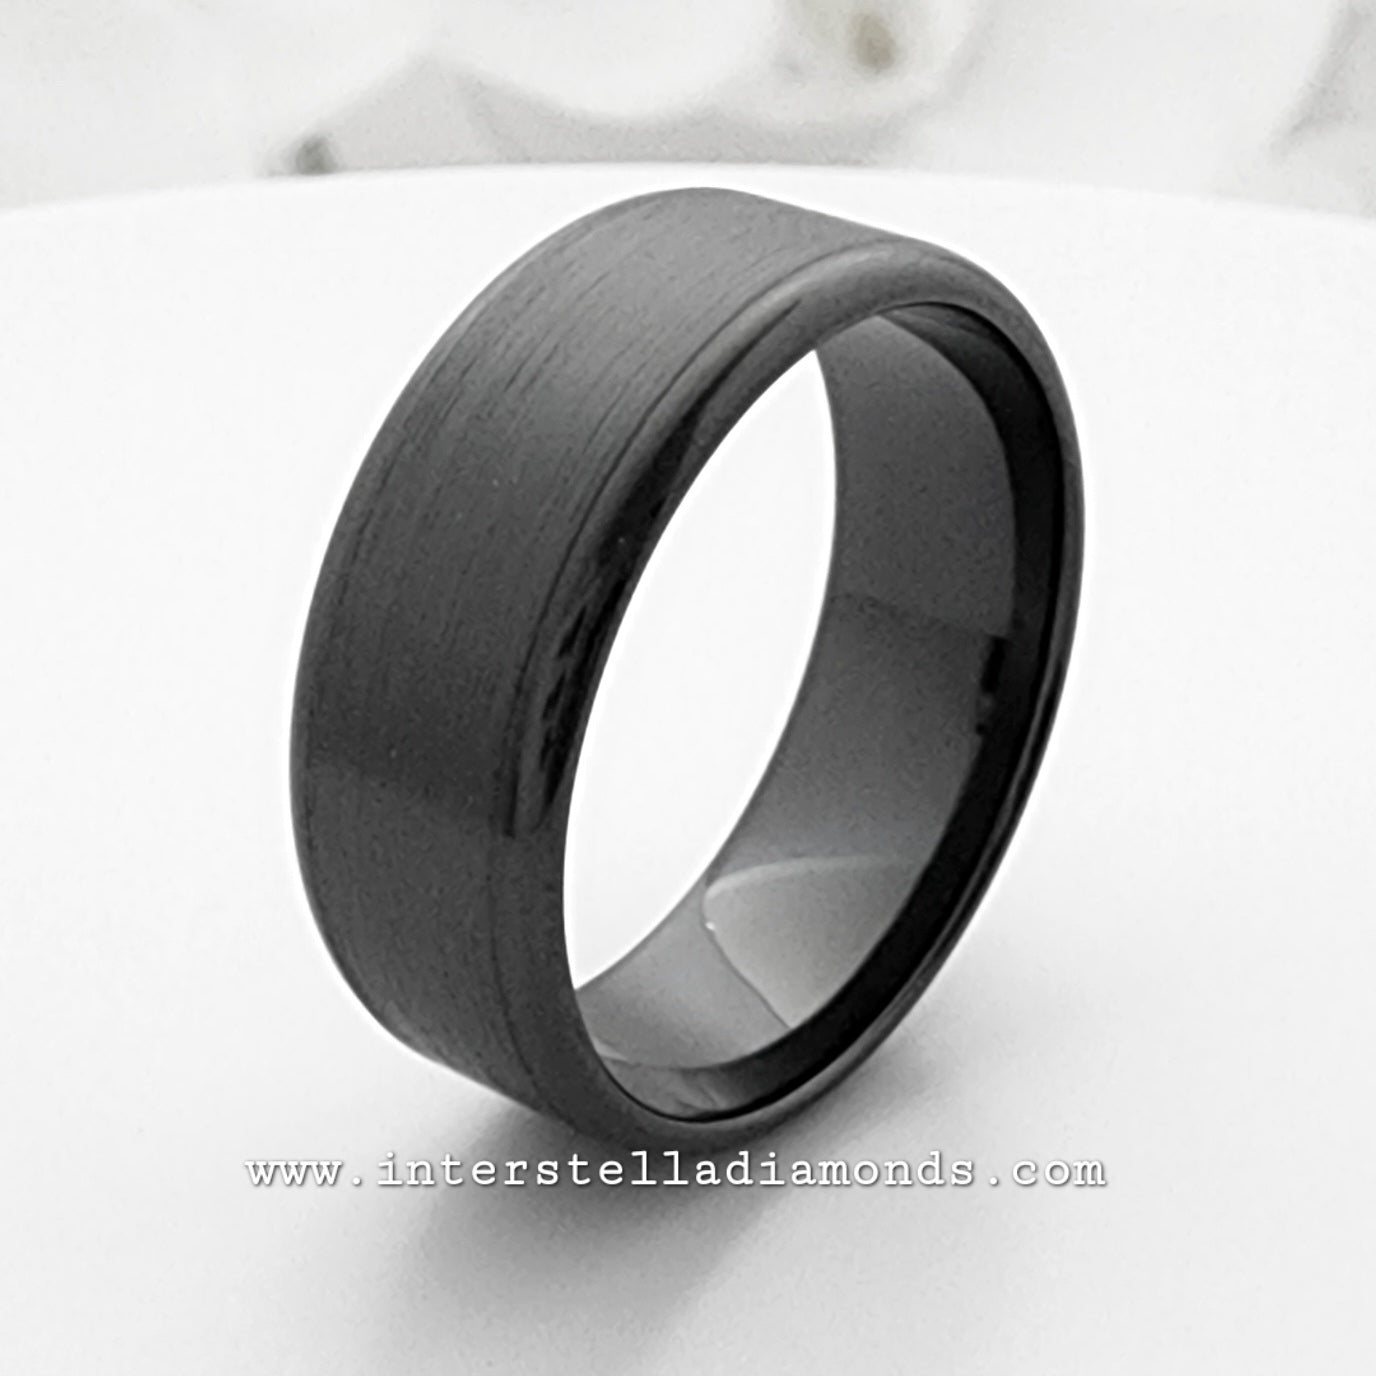 Mens Wedding Ring. Zirconium